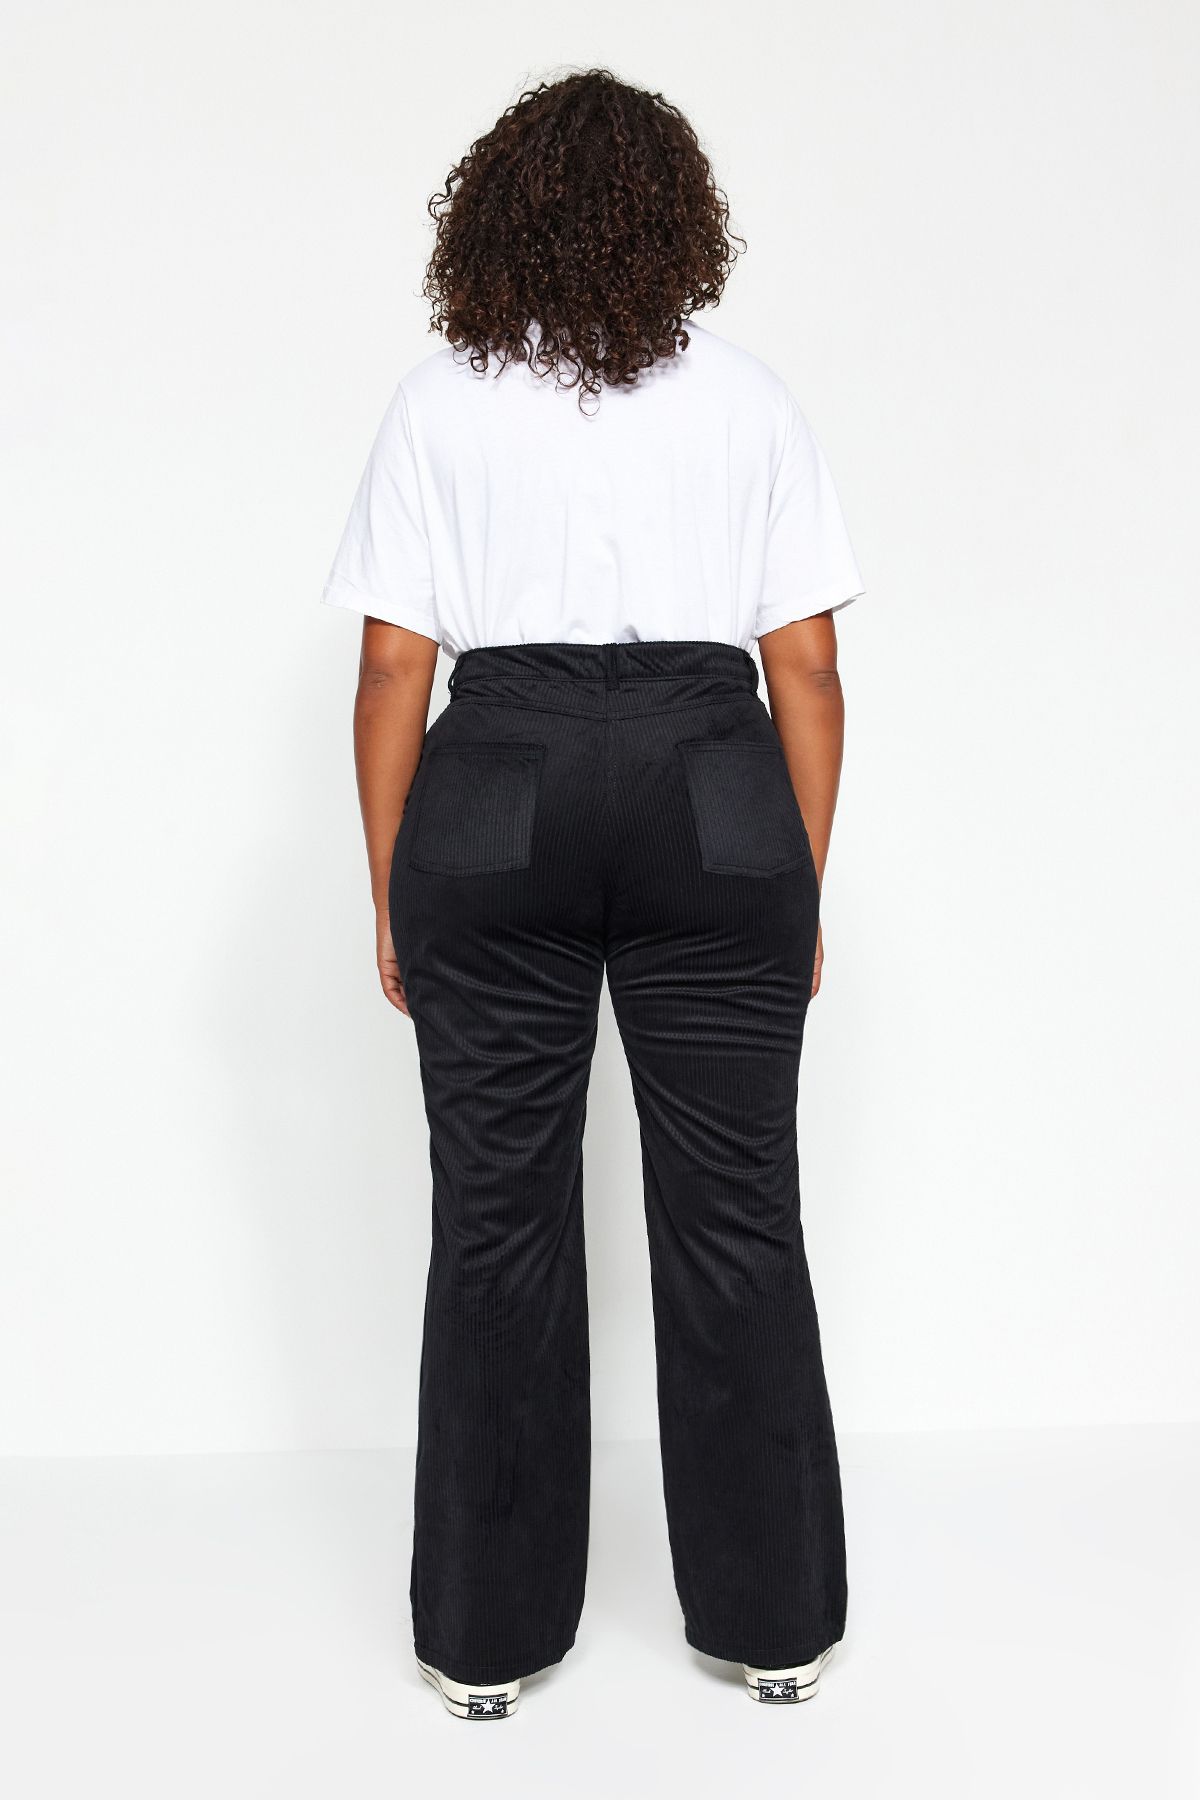 Trendyol Curve Plus Size Pants - Black - Cigarette pants